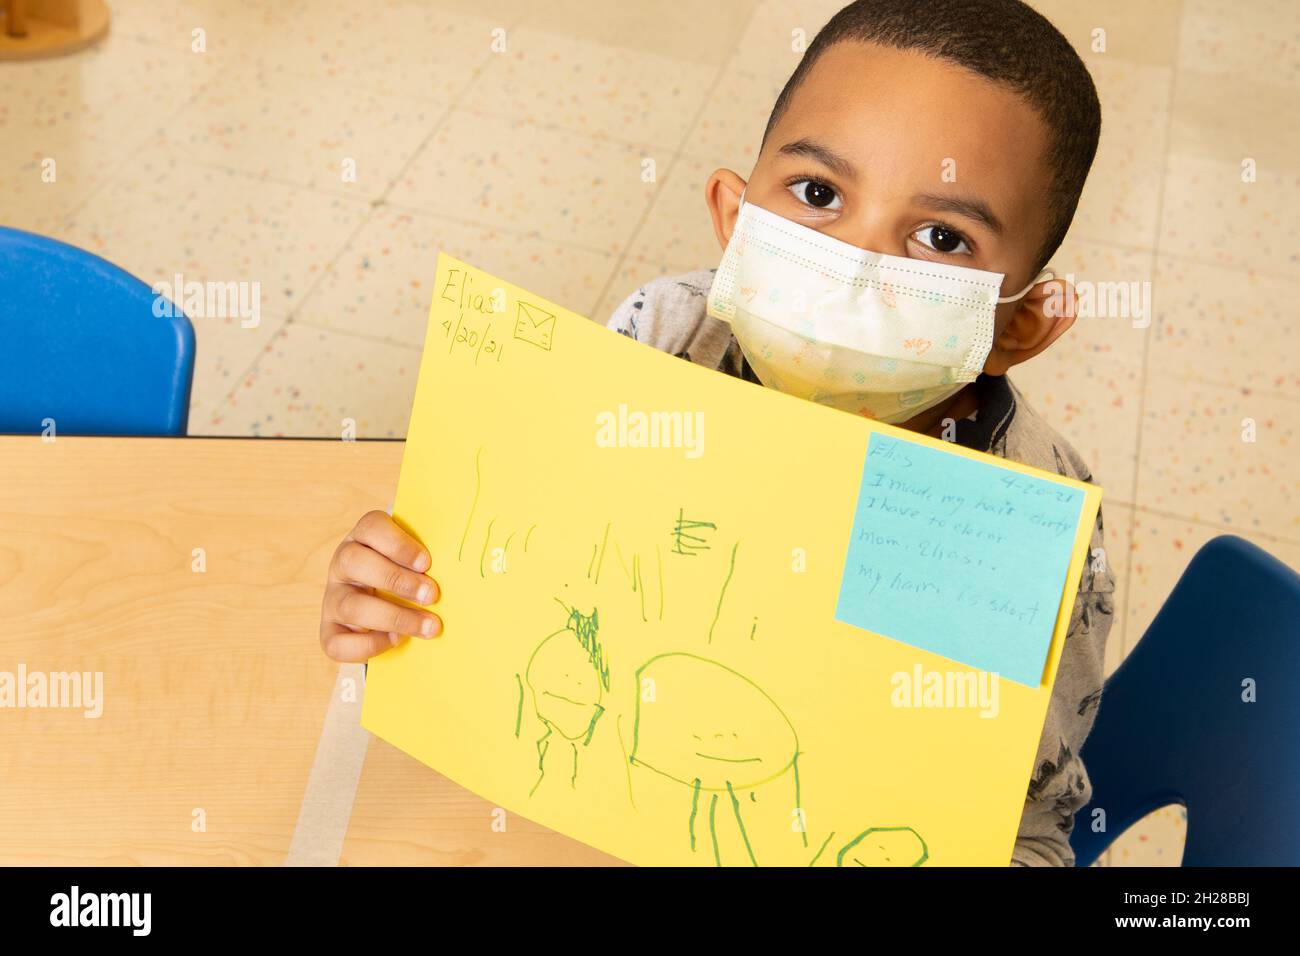 Éducation préscolaire garçon de 4-5 ans tenant le dessin qu'il a fait de sa famille, portant un masque facial pour protéger contre l'infection Covid-19 Banque D'Images